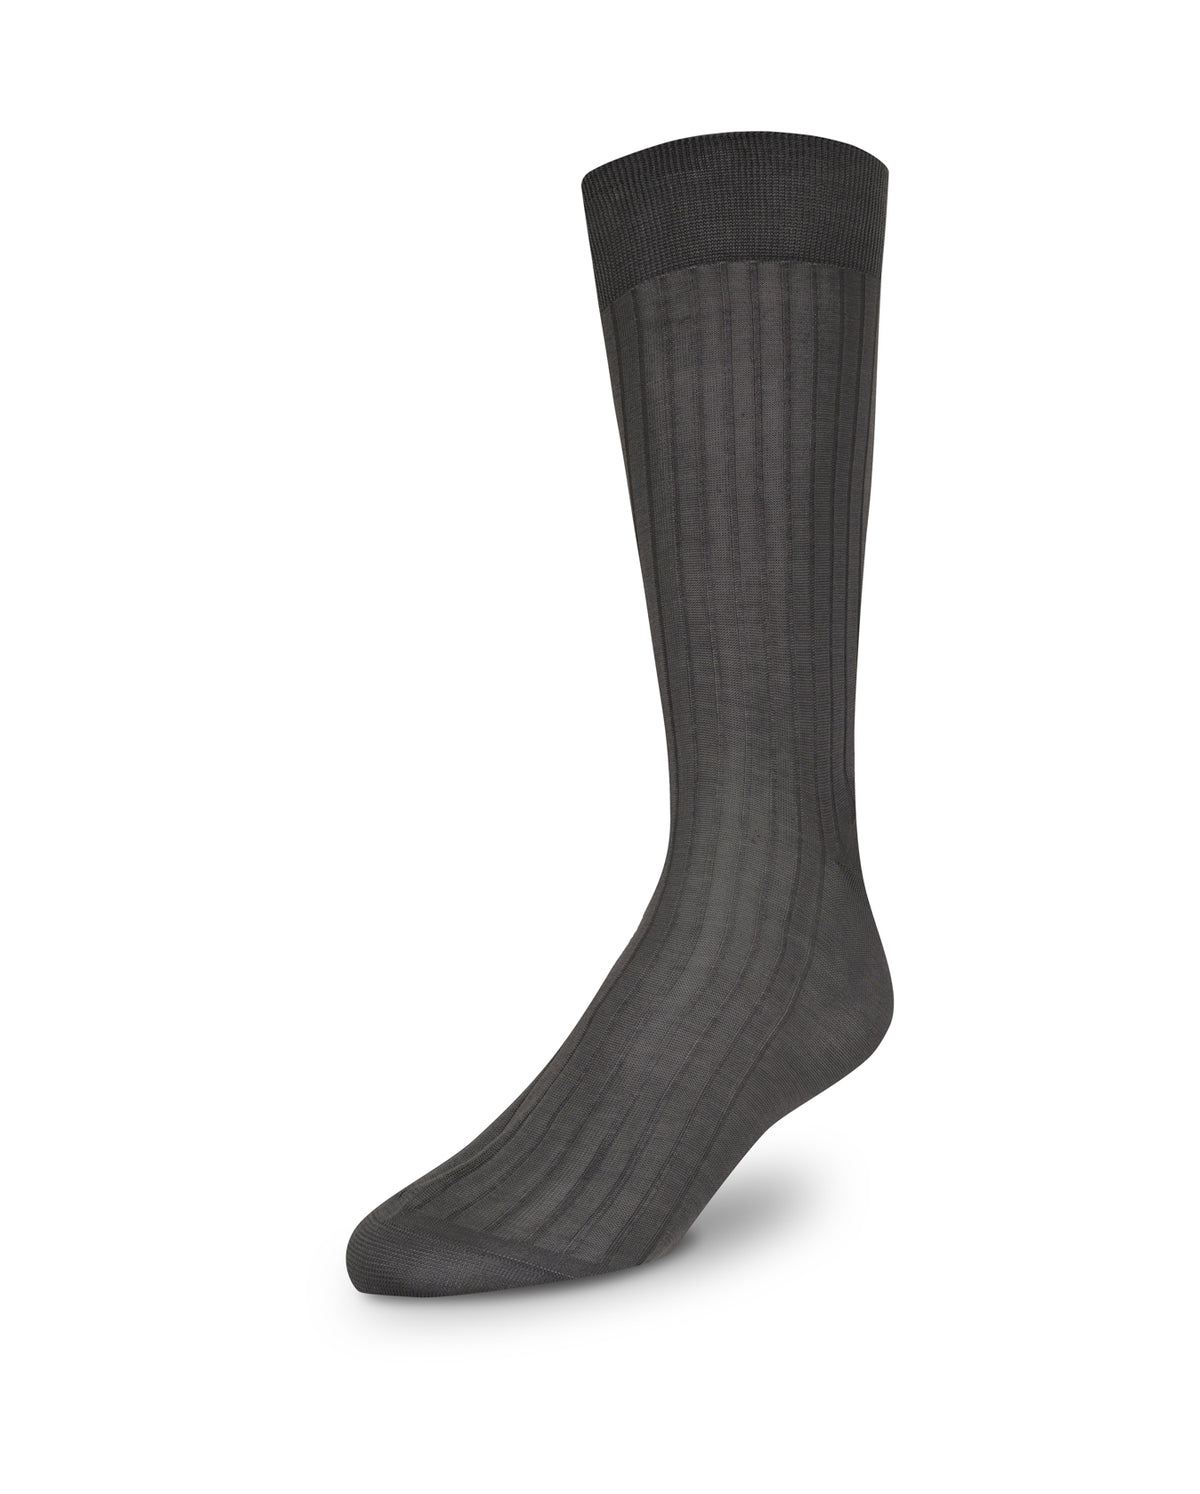 Ribbed Calf Length Socks - Medium Grey